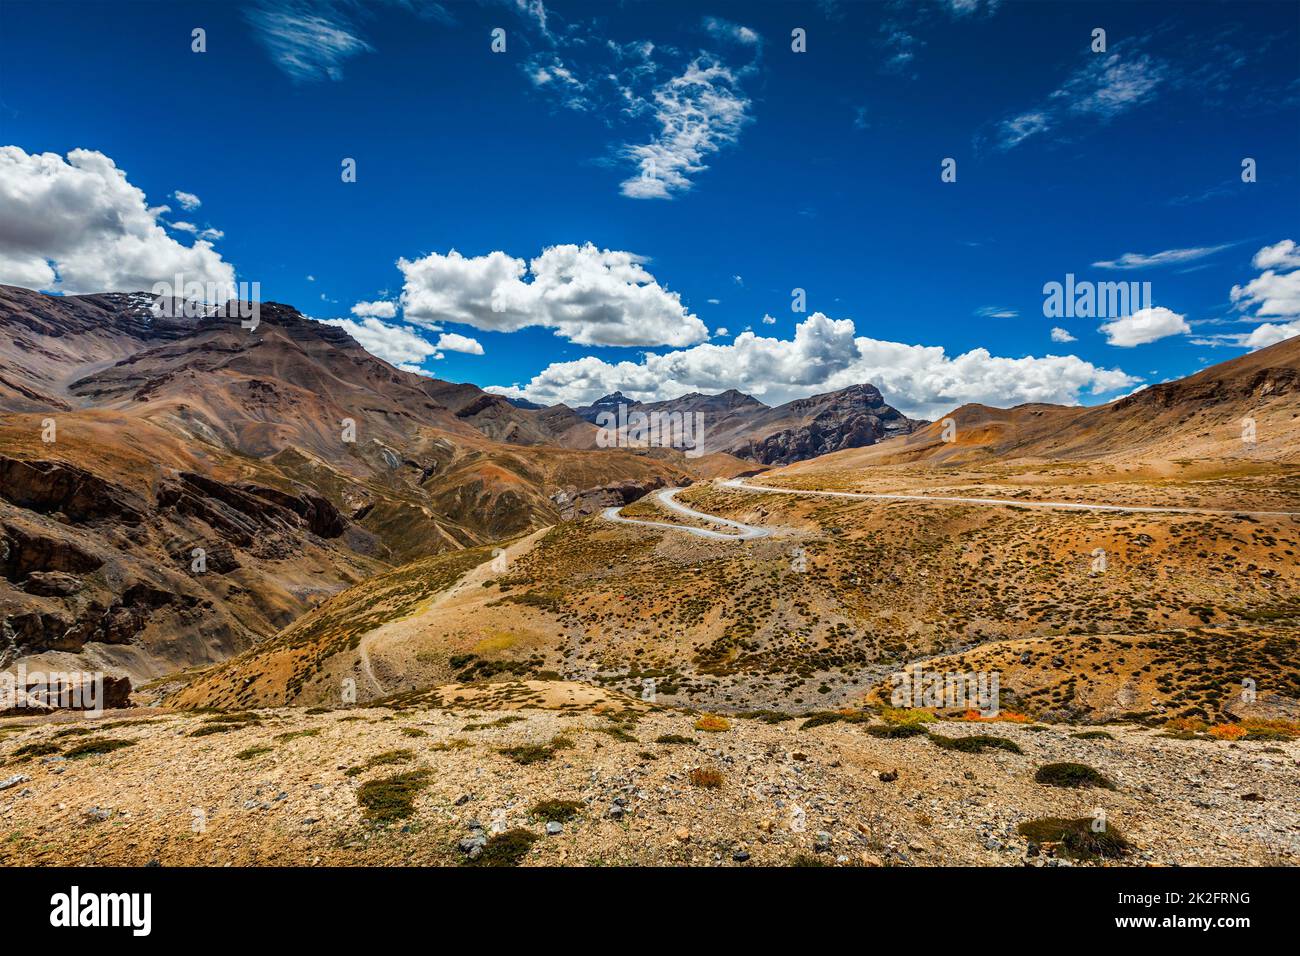 Manali-Leh road in Himalayas Stock Photo